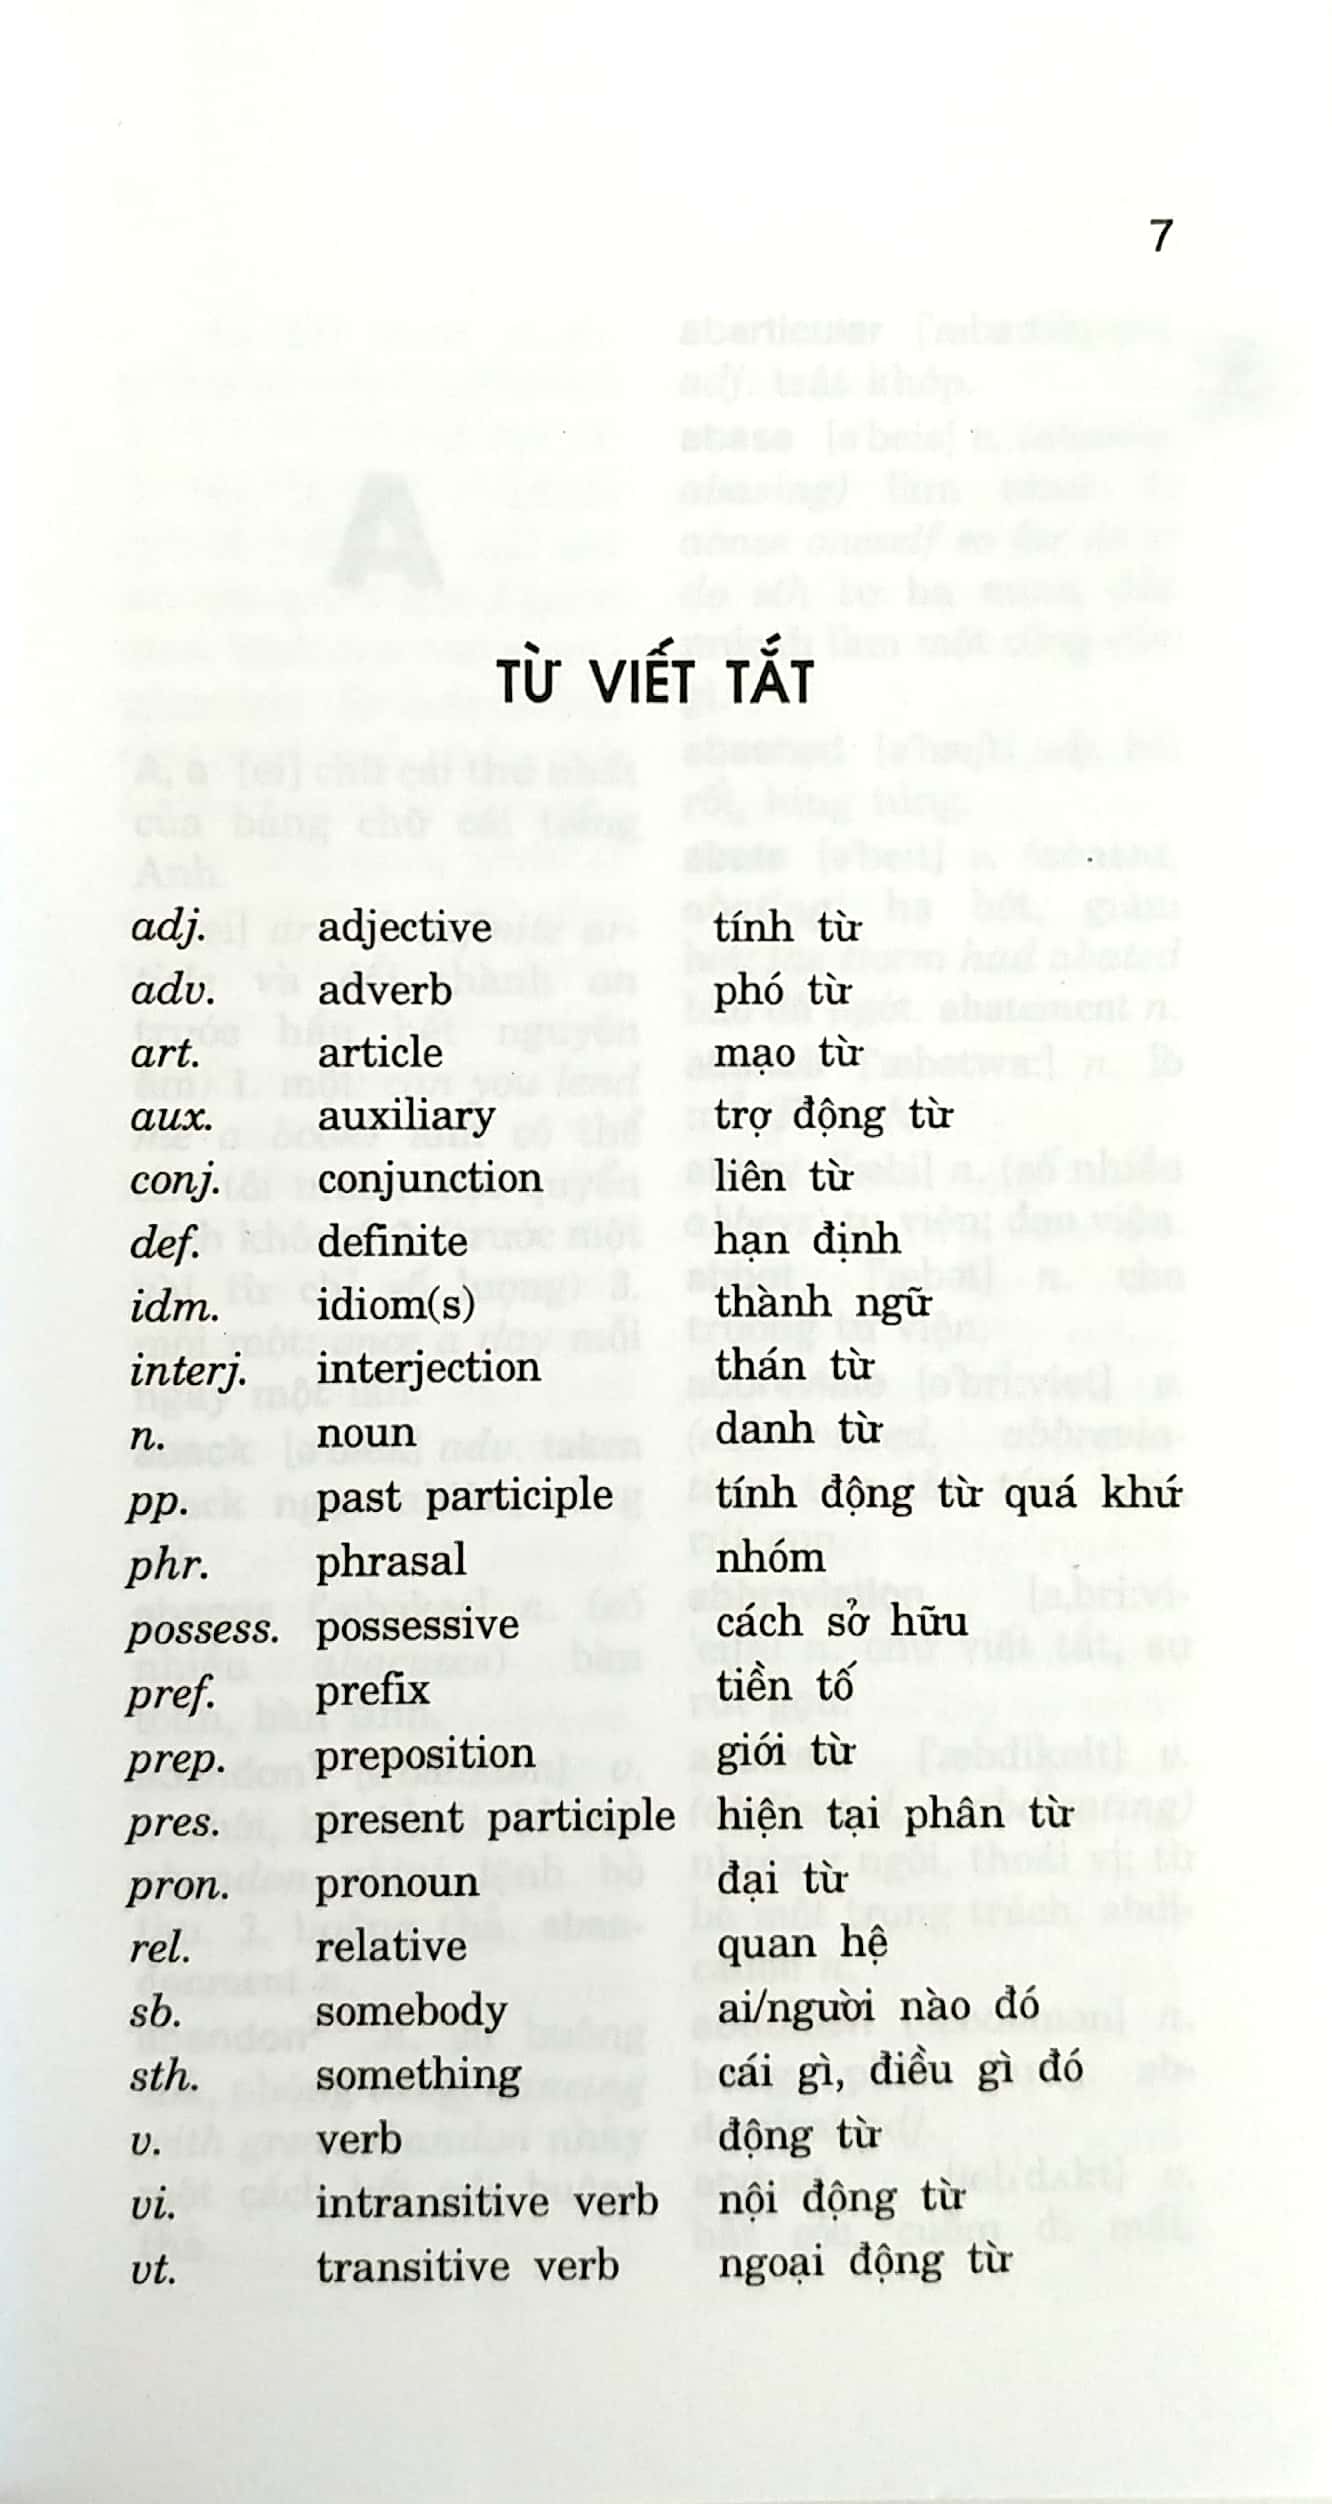 Từ Điển Anh - Việt 60000 Từ Dùng Cho Thanh Niên, Học Sinh, Sinh Viên PDF